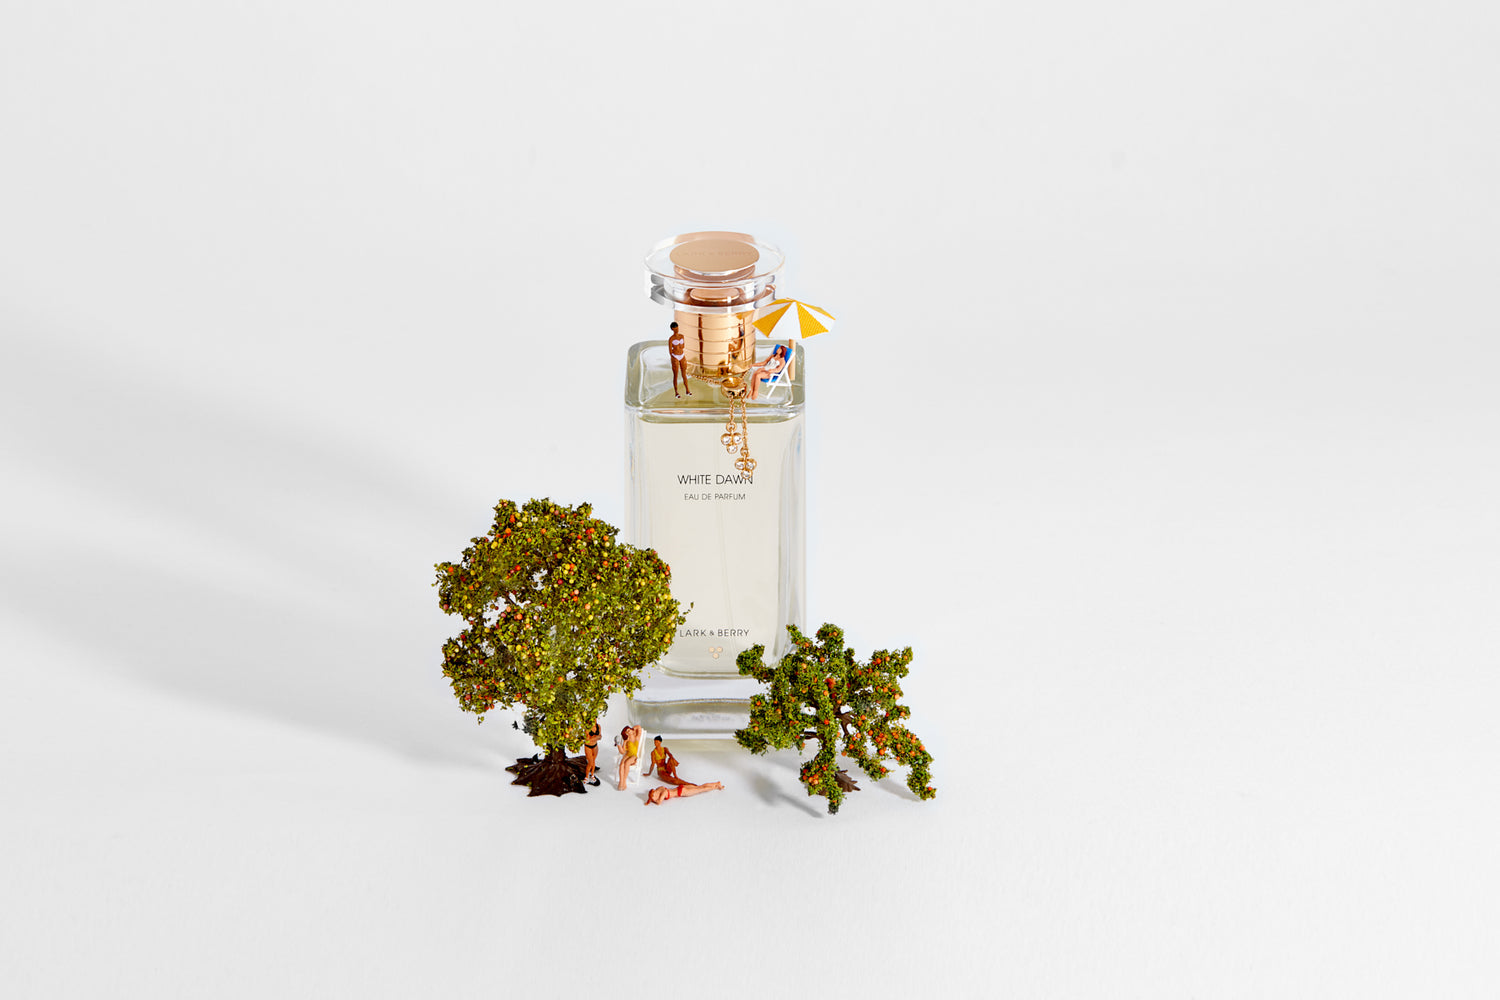 Lark & Berry White Dawn Perfume - 100ml natural cruelty free organic perfume